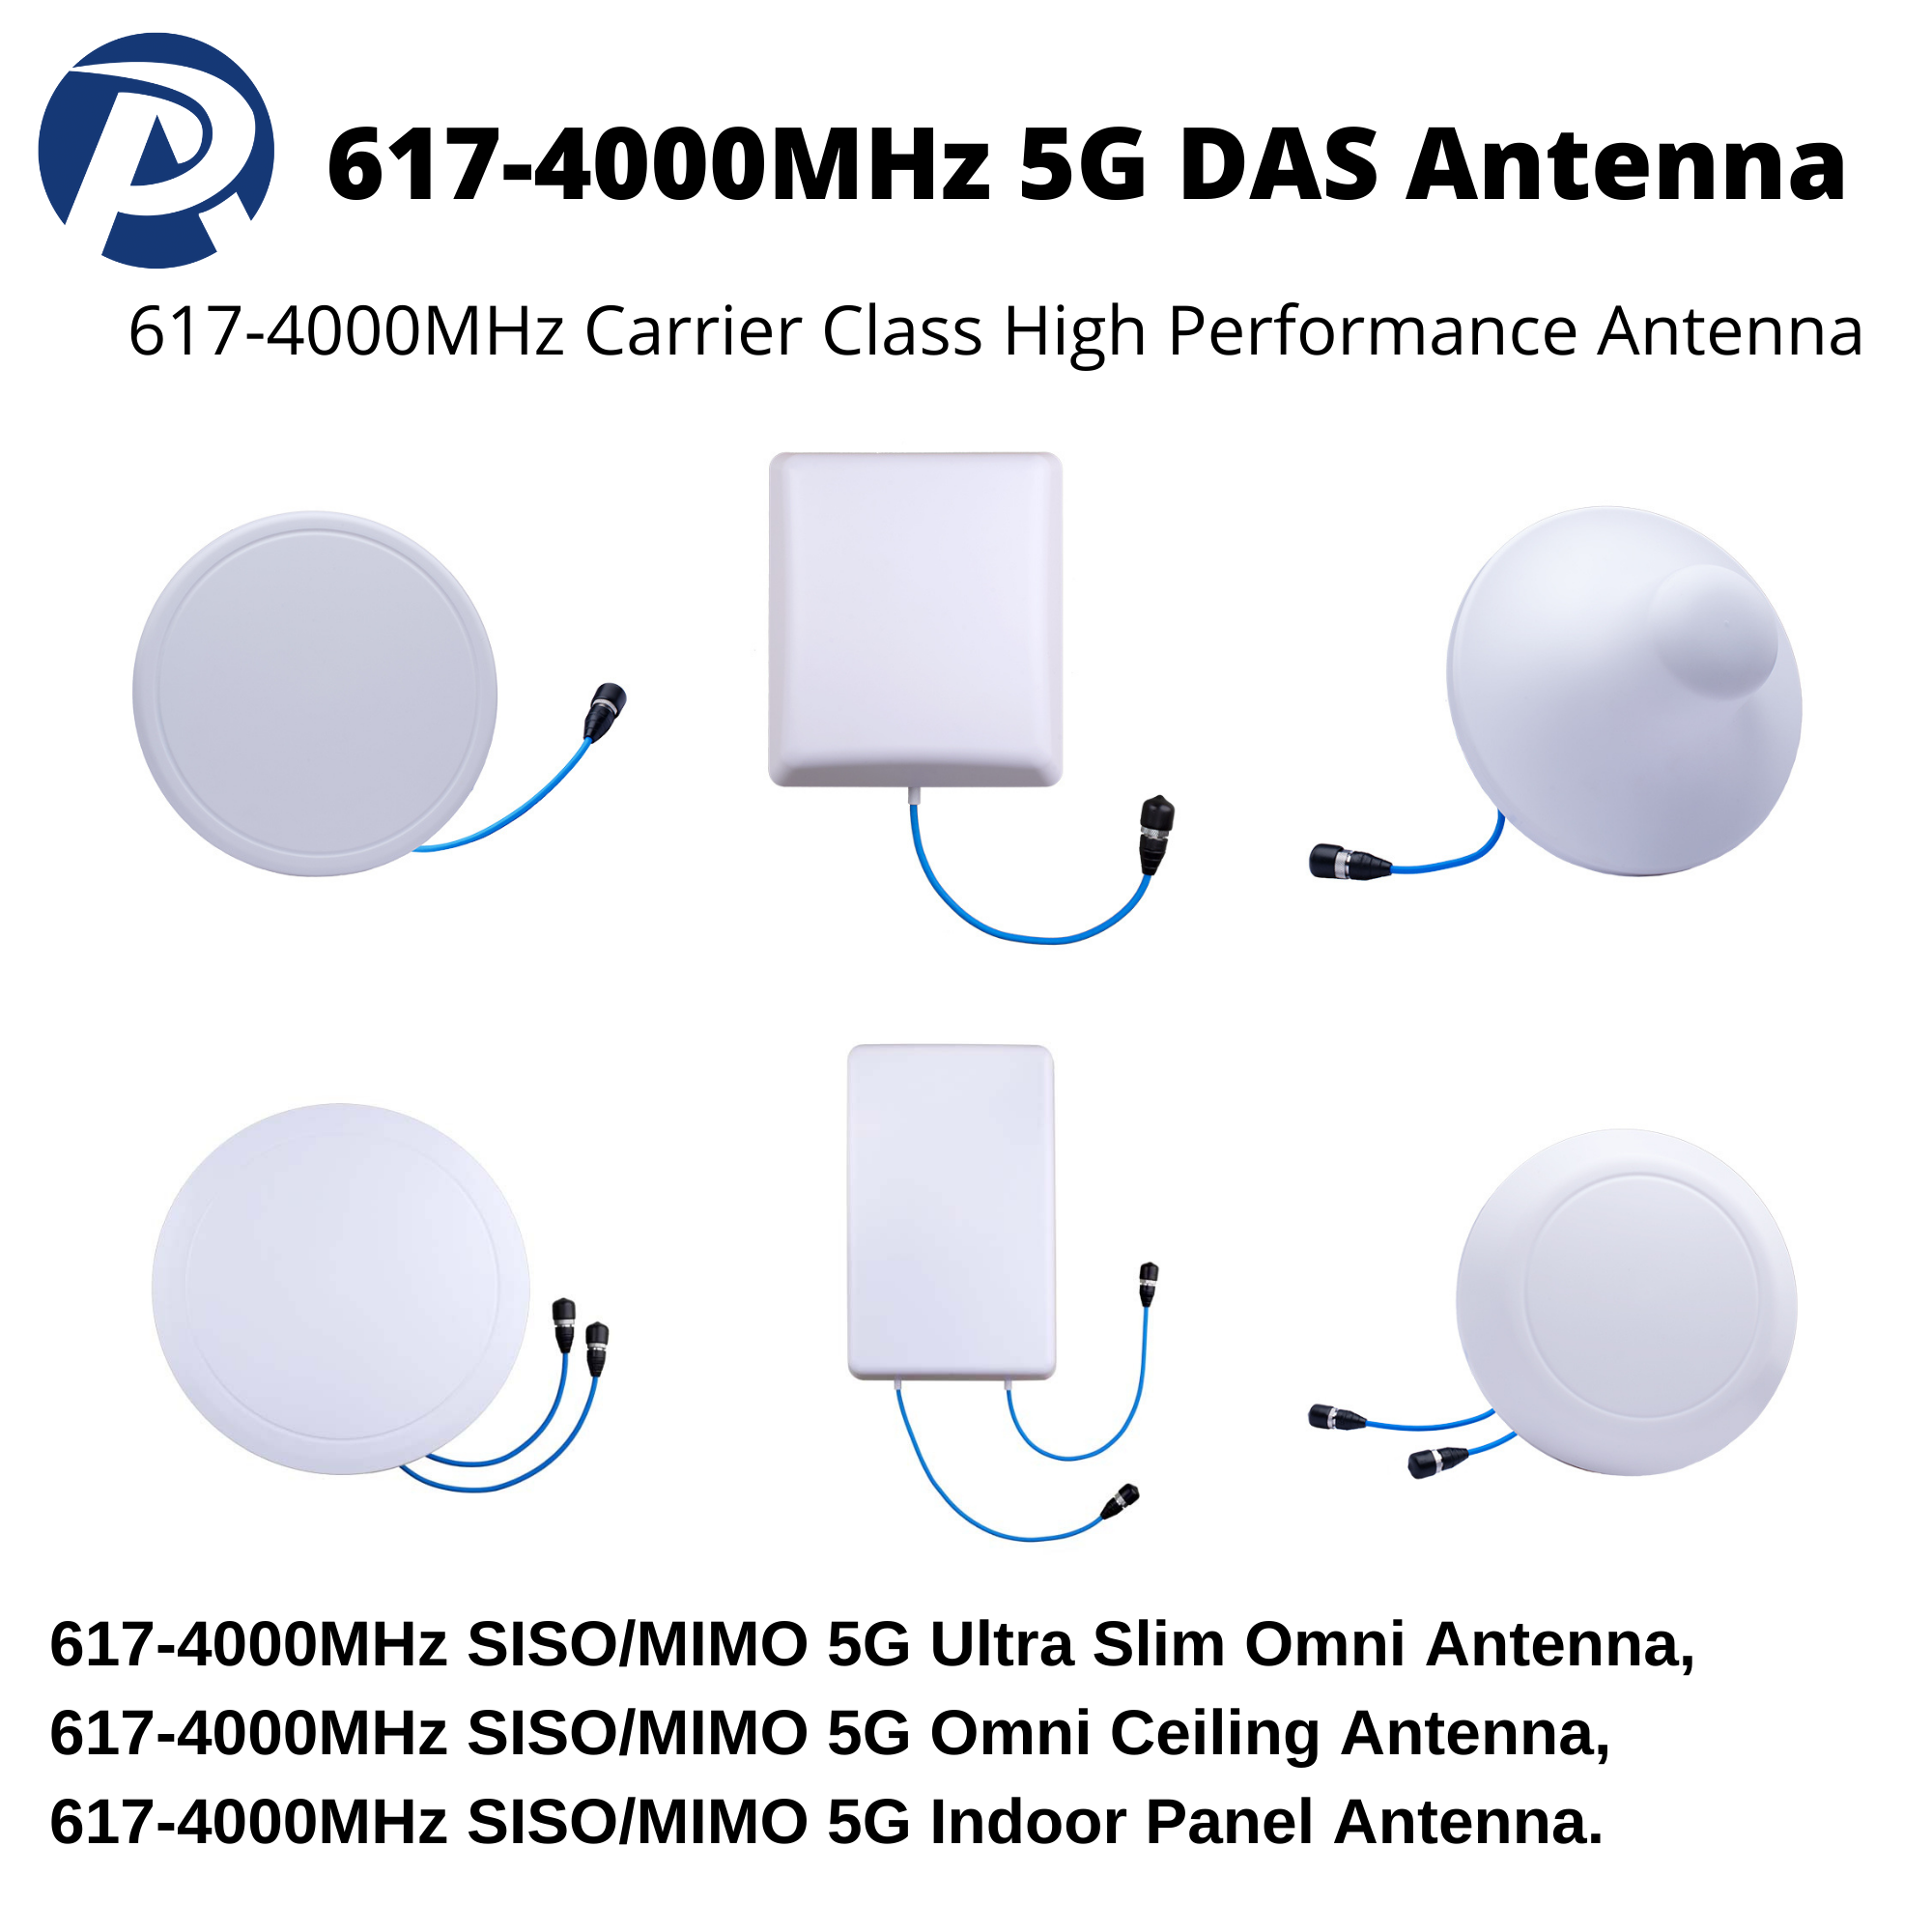 617-4000MHz-5G-DAS-Antenna-Portfolio